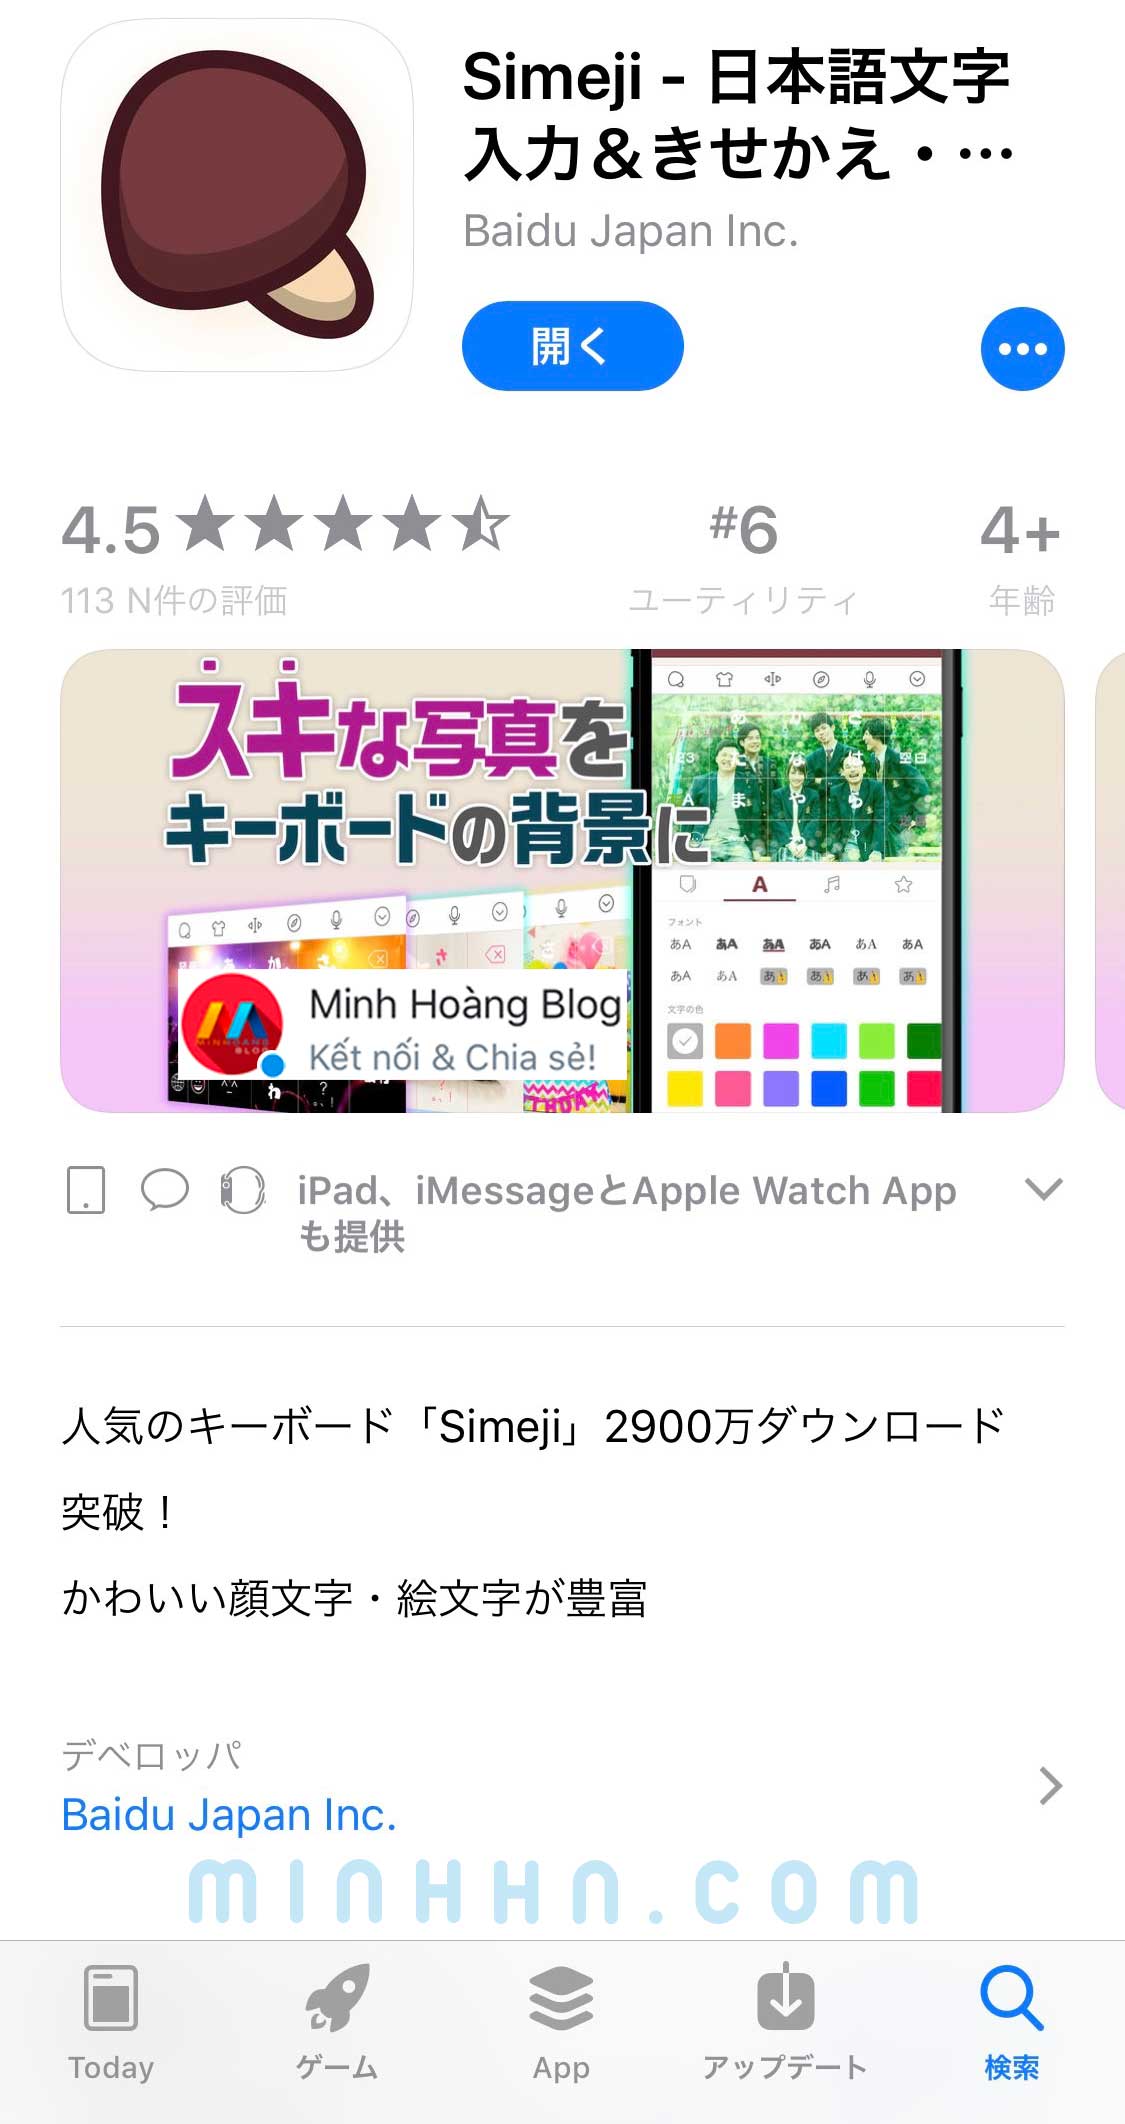 Tìm kiếm và cài đặt app Simeji từ App Store